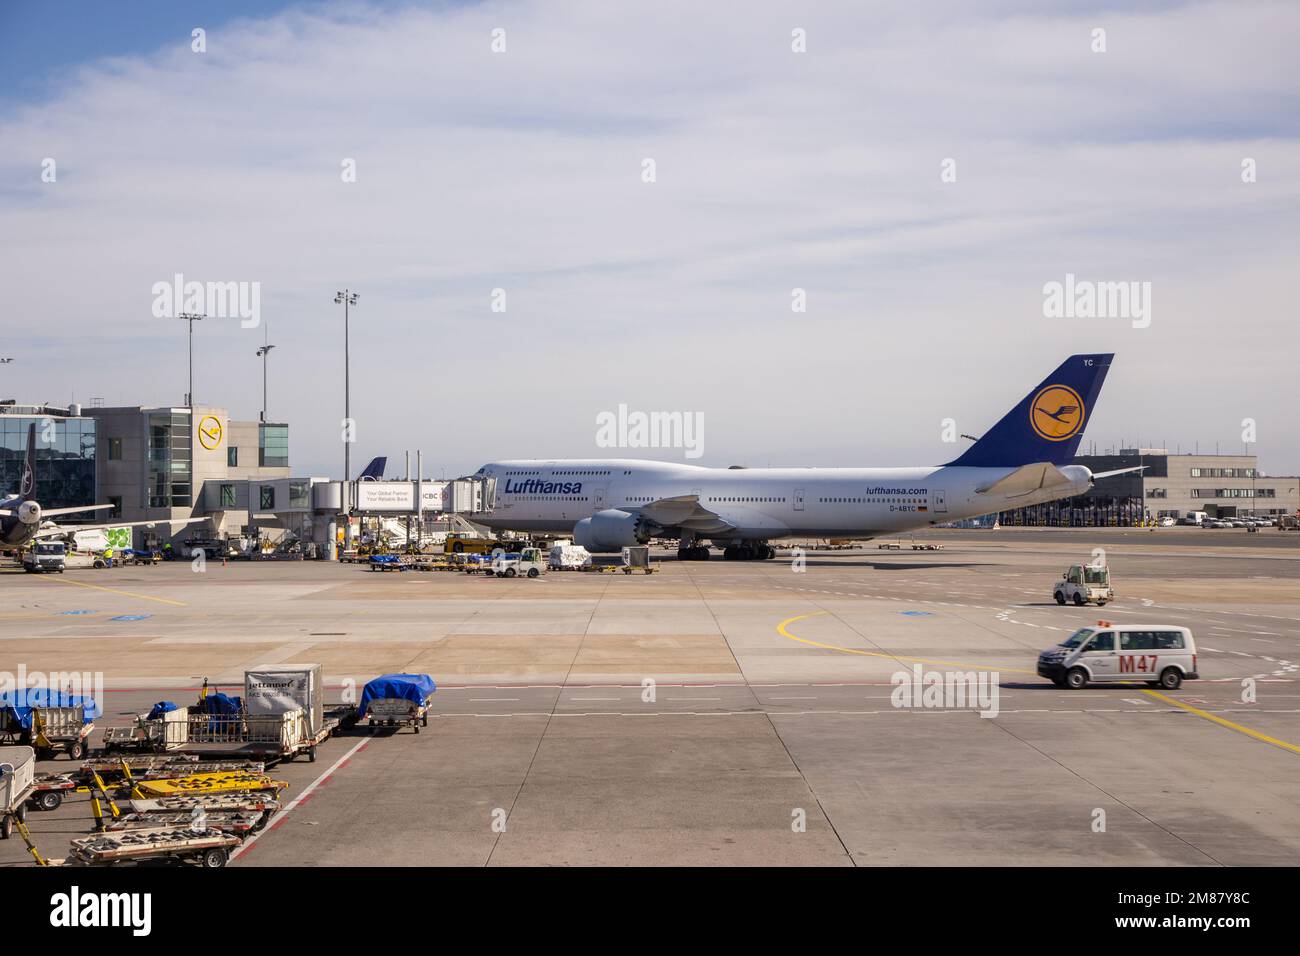 FRANKFURT, ALEMANIA - 18 DE MARZO de 2022: Lufthansa 747 en el asfalto en el aeropuerto internacional de Frankfurt, viajes aéreos, aviones de fuselaje ancho Foto de stock